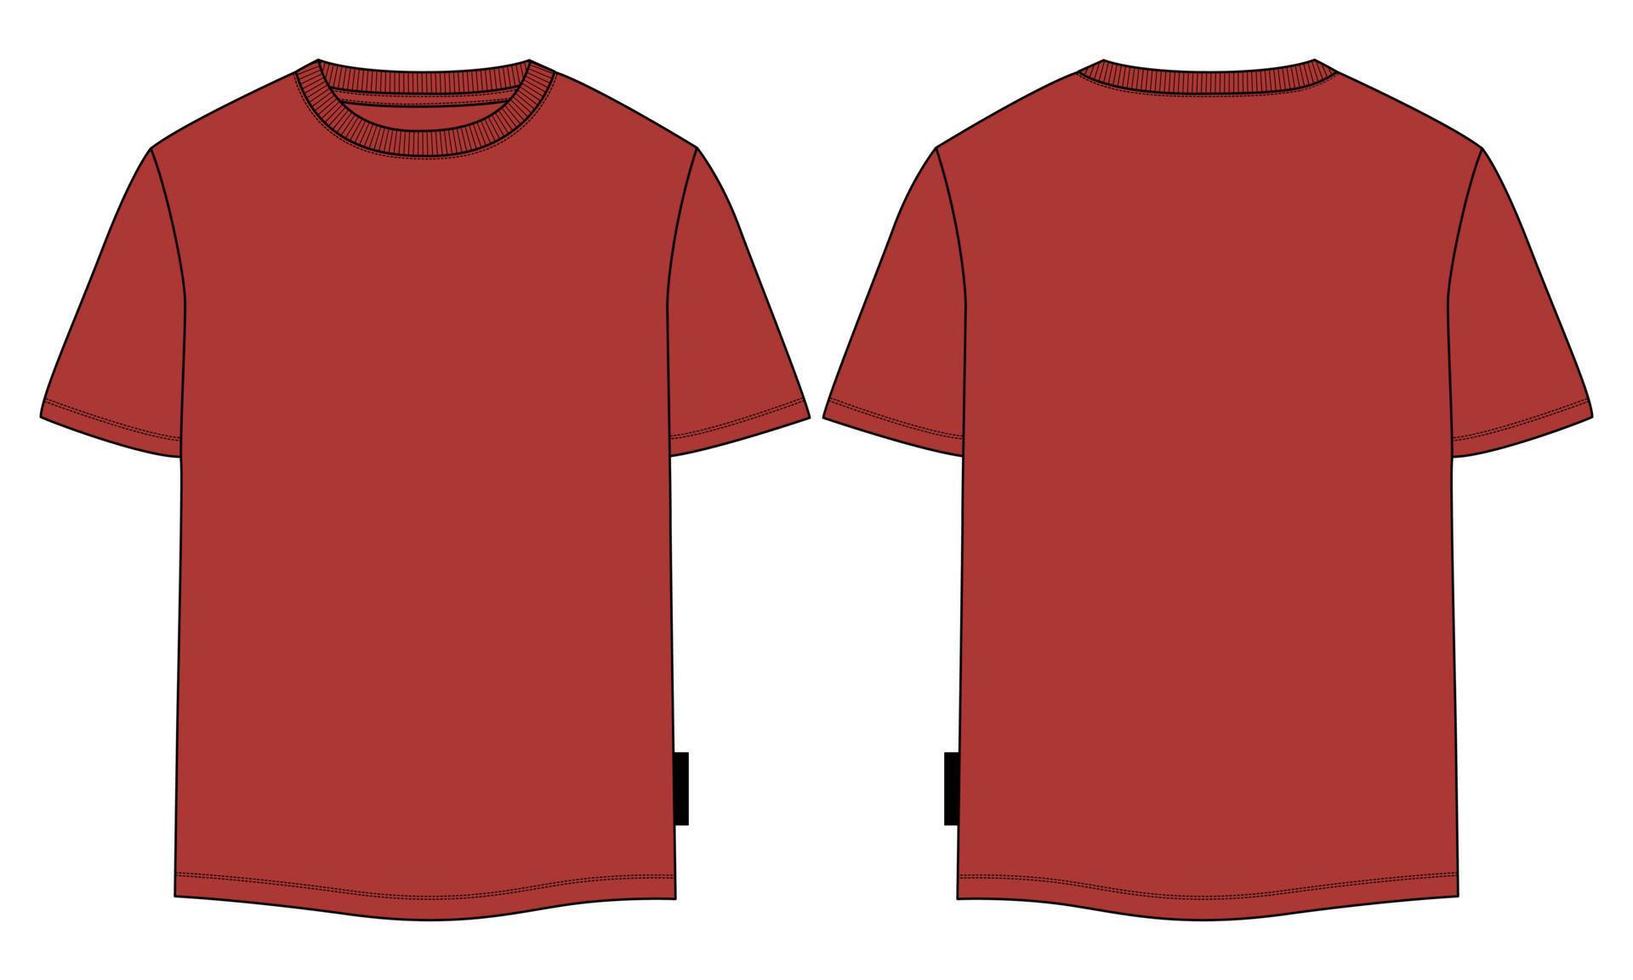 camiseta de manga comprida com vista frontal e traseira do modelo de ilustração vetorial de desenho plano de moda técnica. vetor